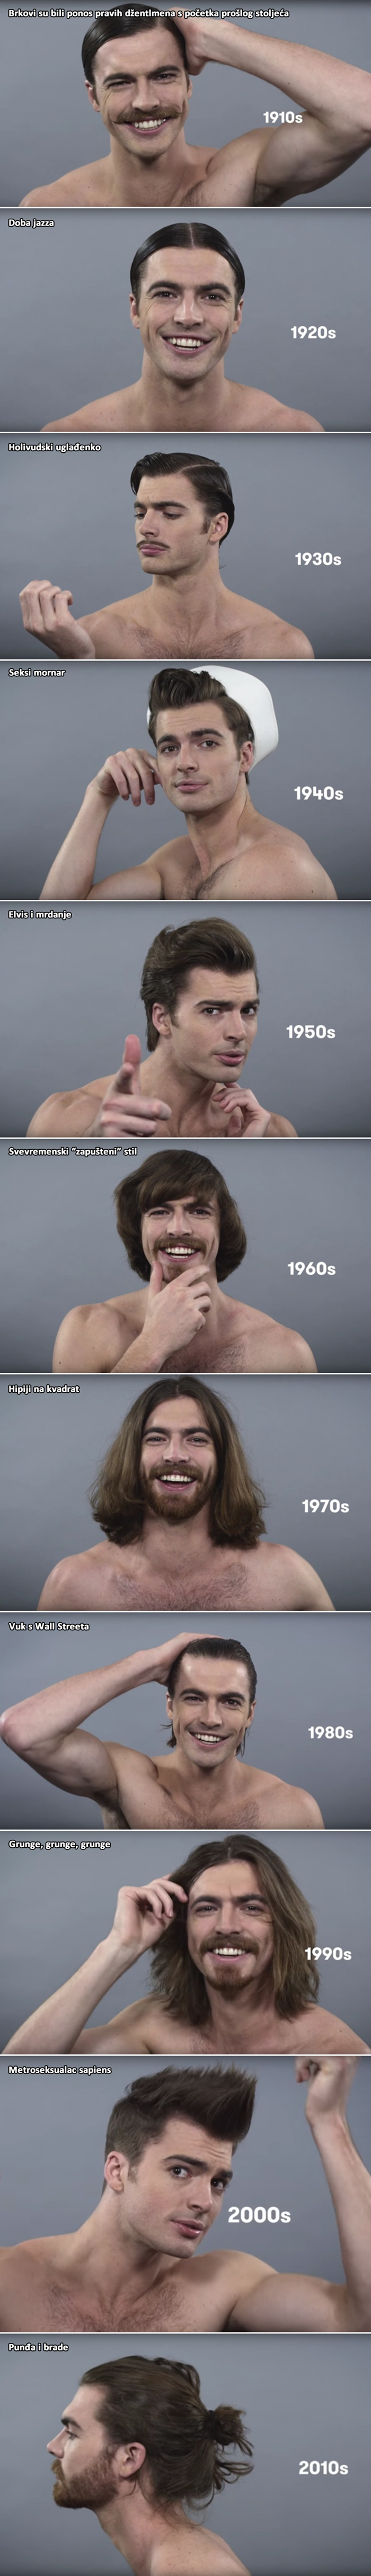 Standardi muške ljepote kroz 100 godina